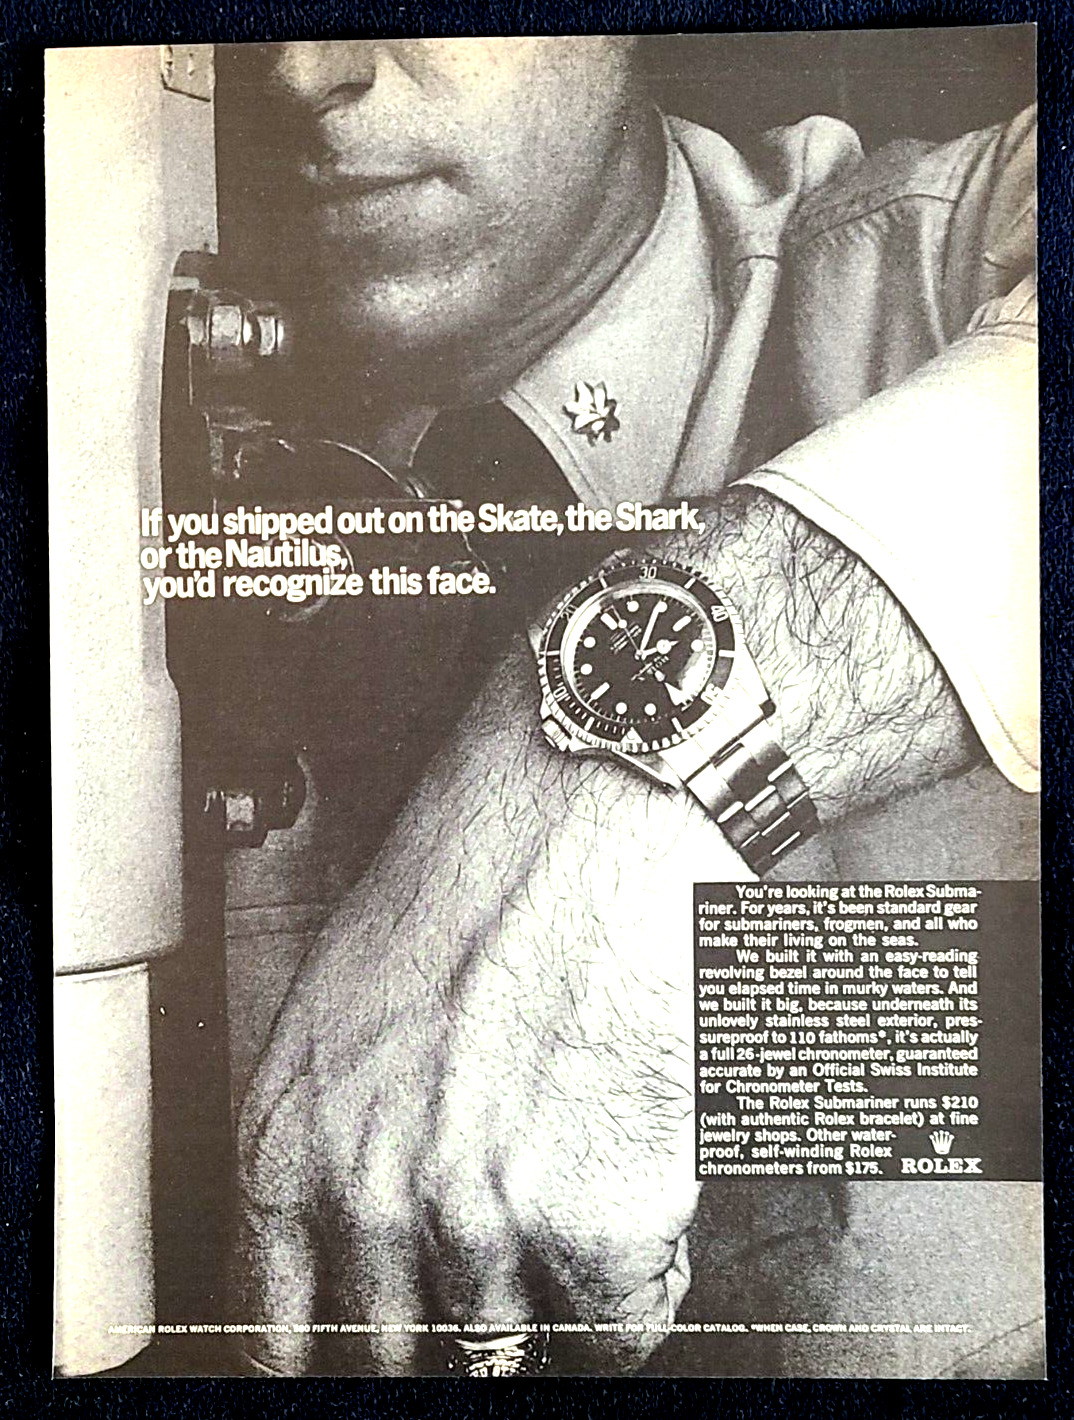 Rolex Submariner Watch Navy Submarine Original 1966 Vintage Print Ad